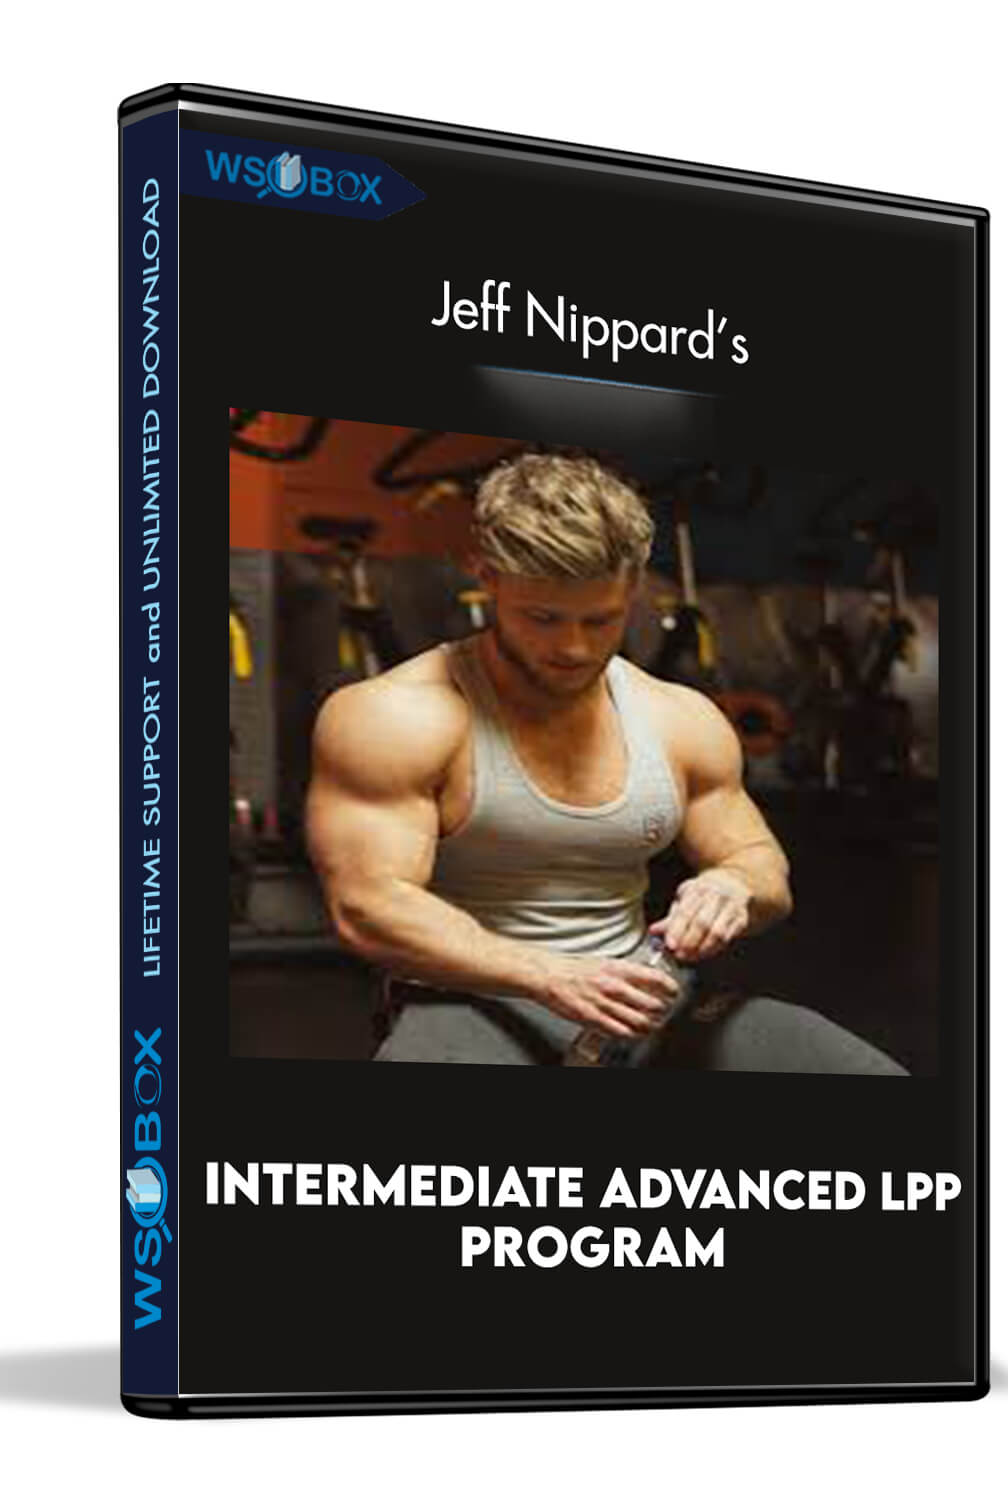 Jeff Nippard's Intermediate Advanced LPP Program